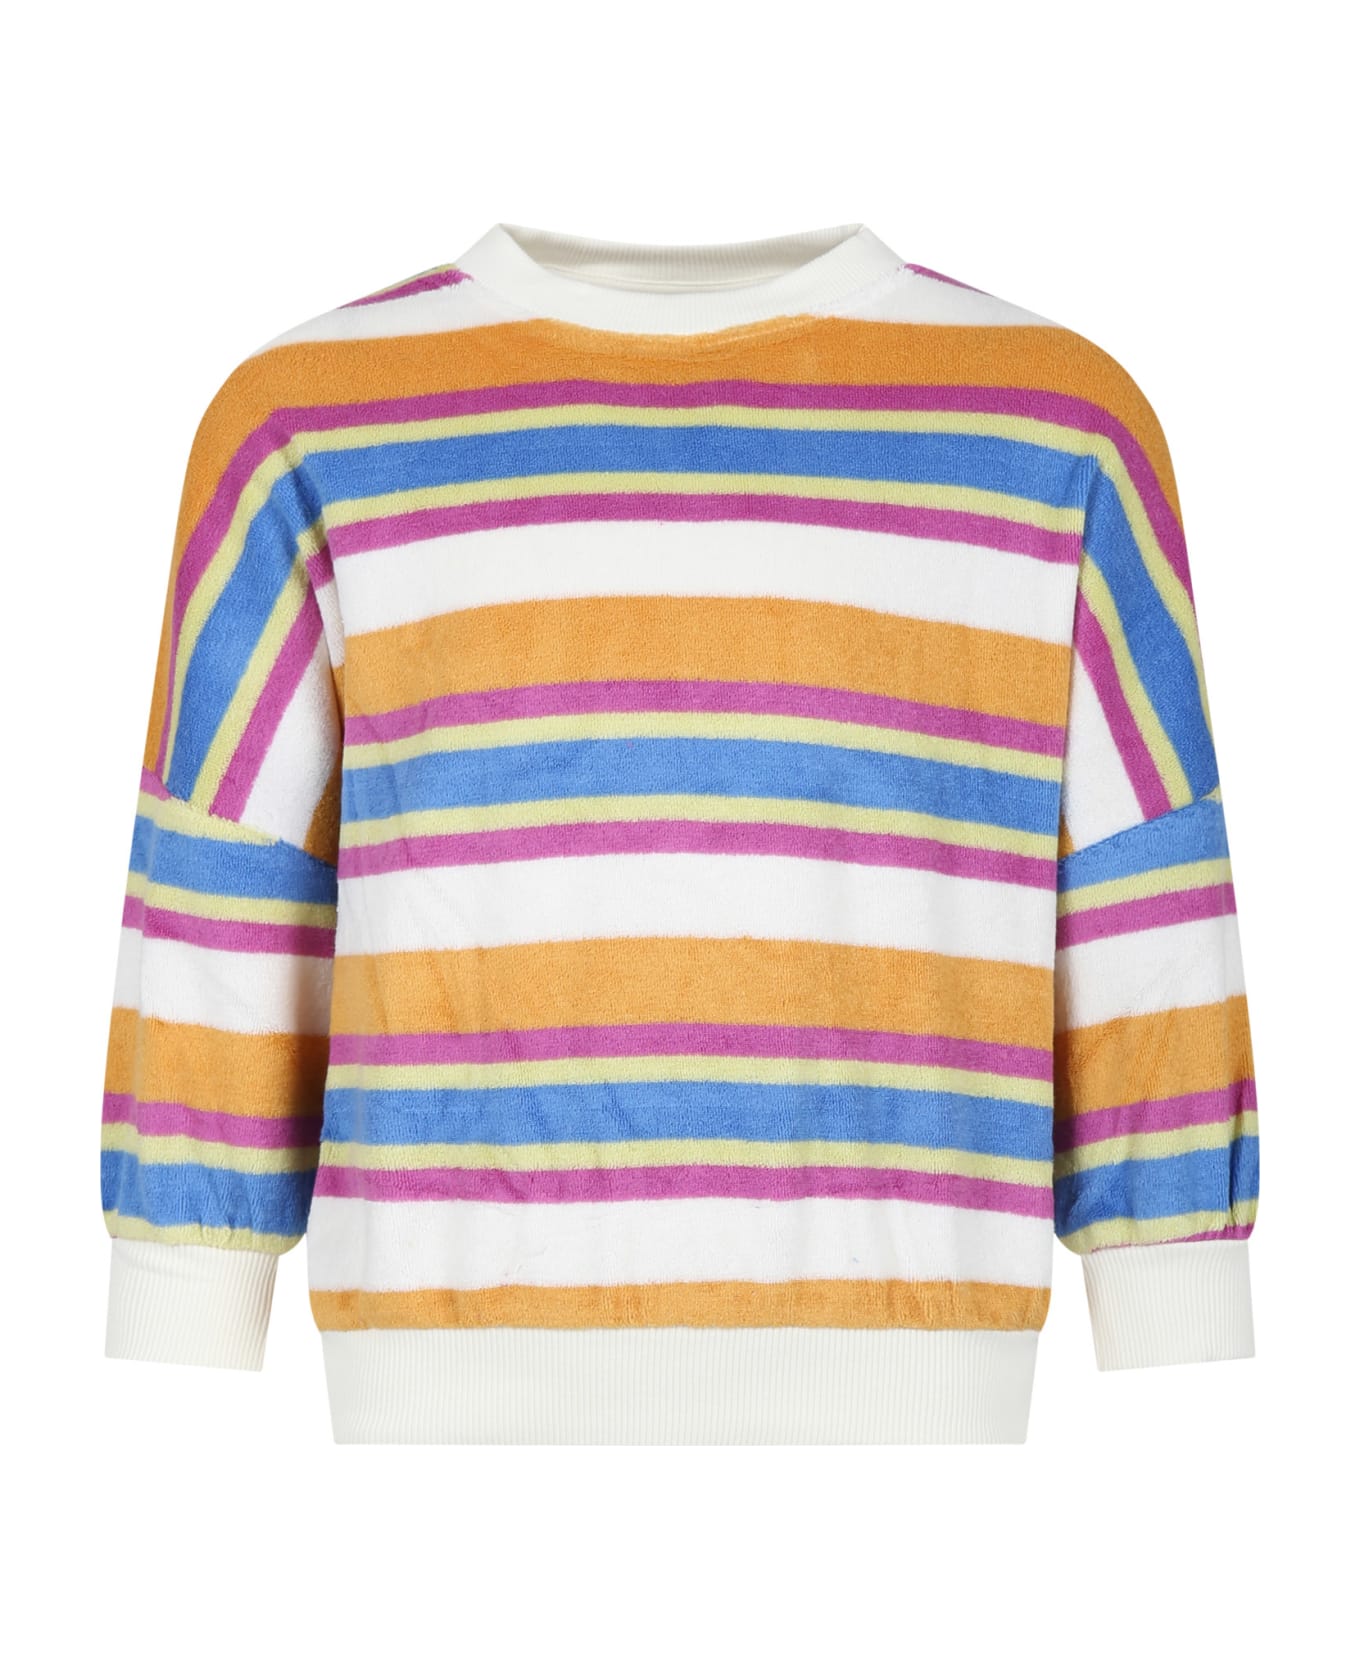 Molo Multicolor Sweatshirt For Girl - Multicolor